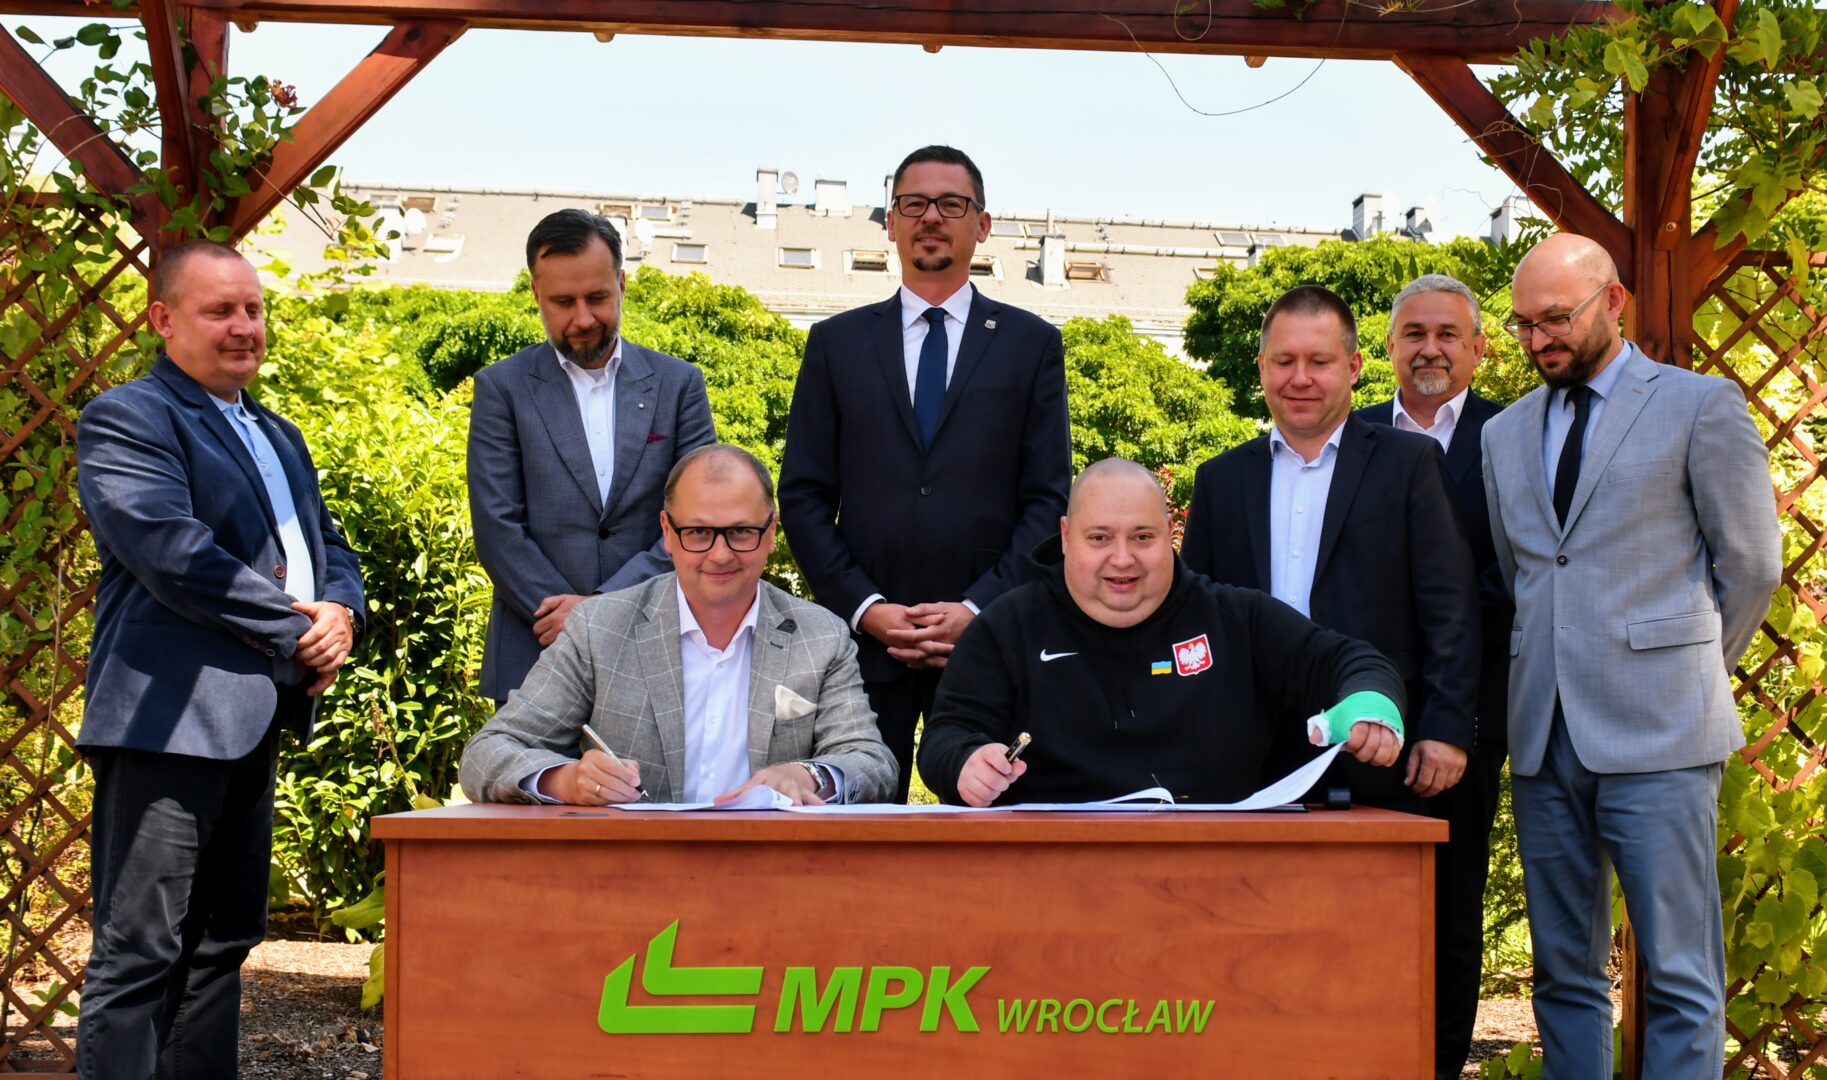 MPK Wrocław elektryczny autobus podpisanie umowy